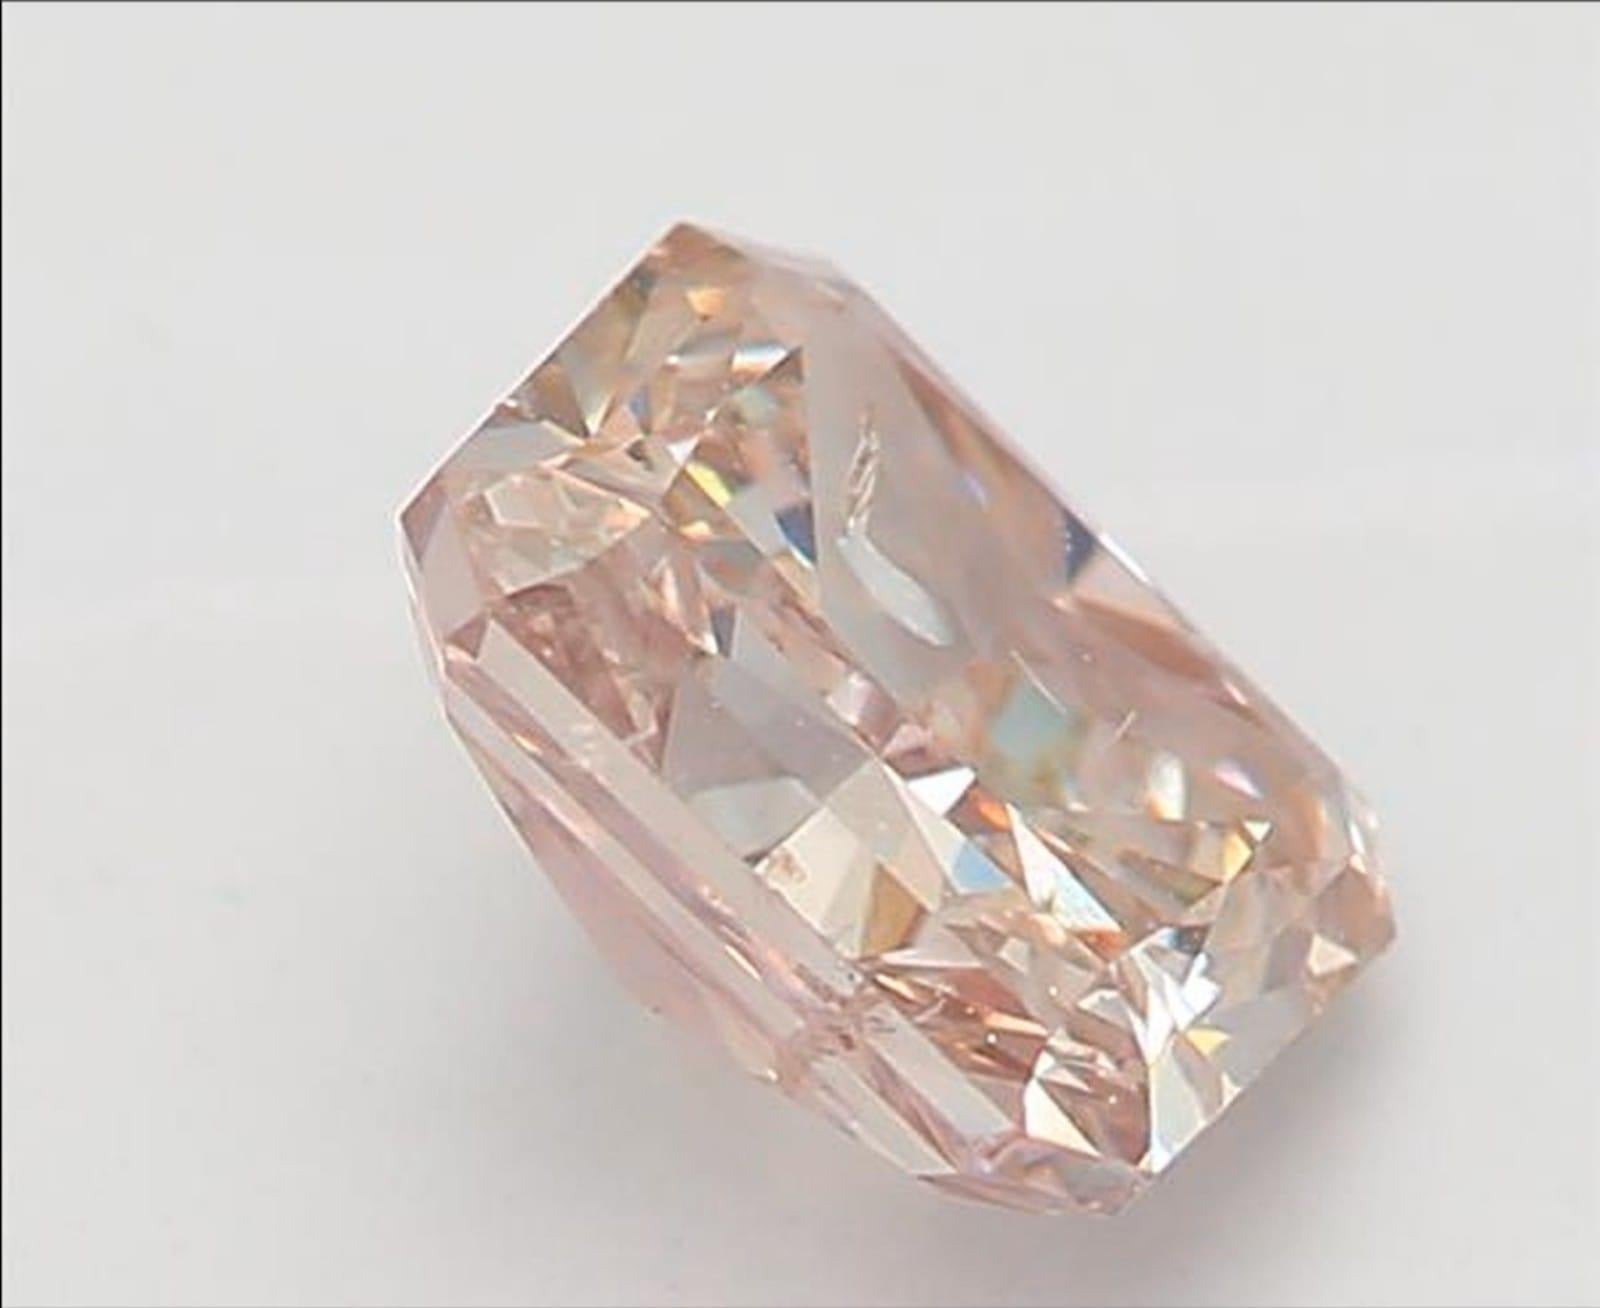 *100% NATÜRLICHE FANCY-DIAMANTEN*

Diamant Details

➛ Form: Strahlend
➛ Farbton: Fancy Braun Rosa 
➛ Karat: 0,50
➛ Klarheit: I2
➛ GIA zertifiziert 

^MERKMALE DES DIAMANTEN^












Unser GIA-zertifizierter Diamant ist ein Diamant, der vom